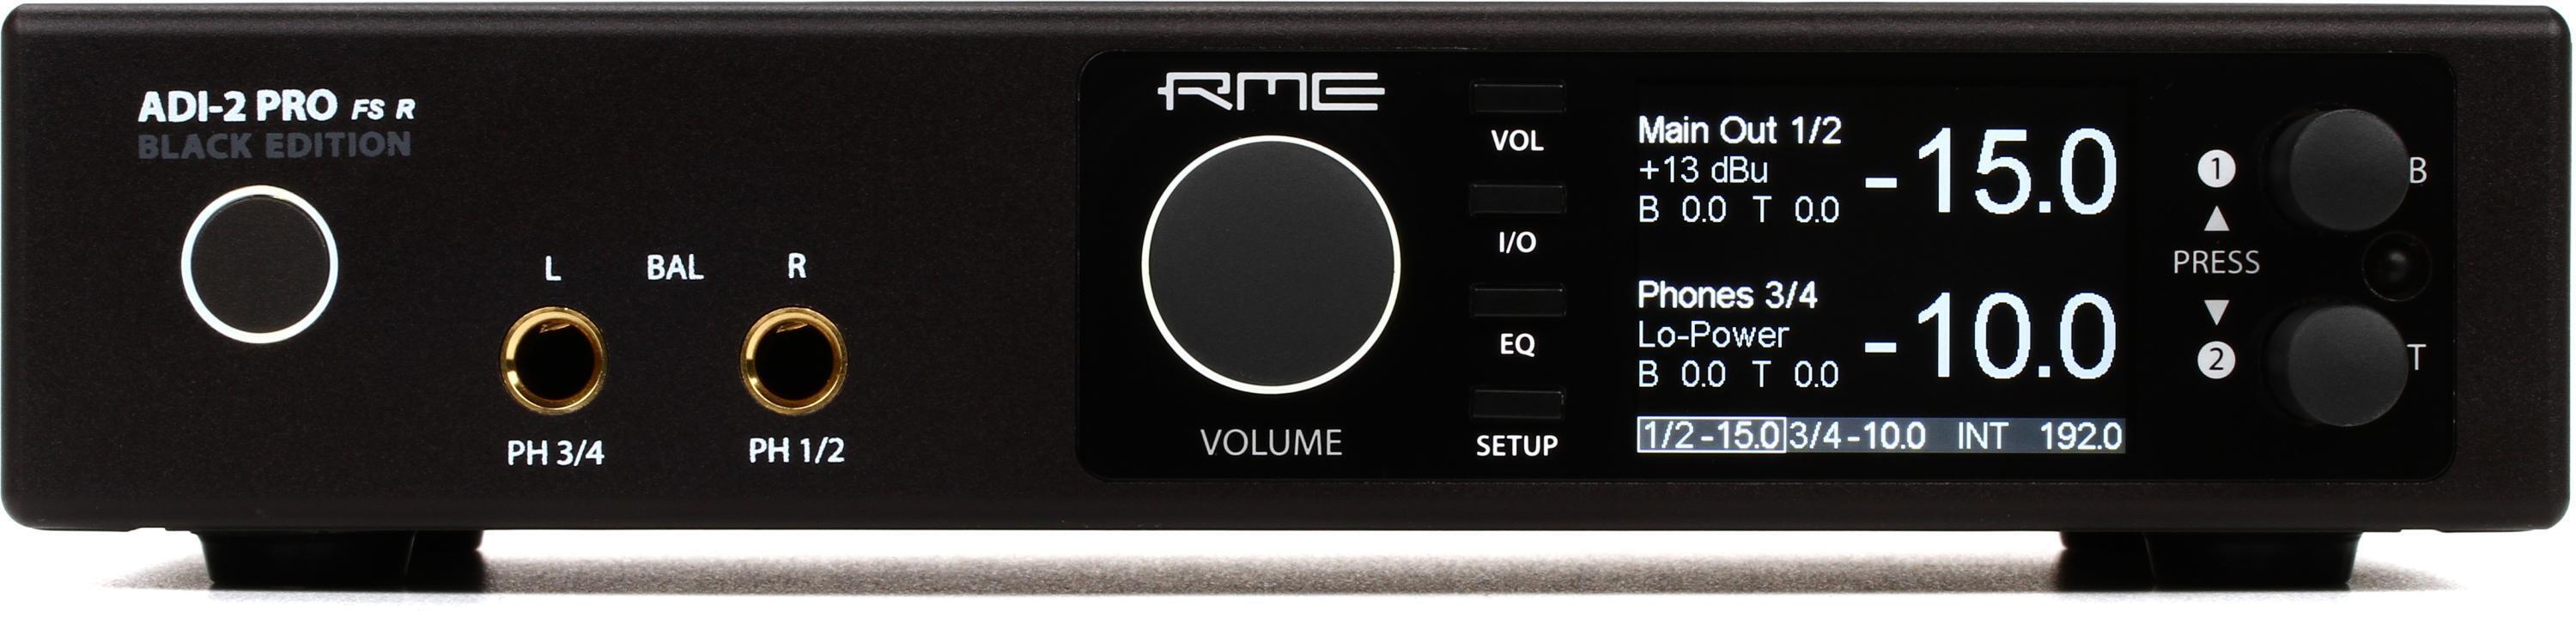 代引き人気 RME ADI-2 Pro FS R Black Edition レコーディング/PA機器